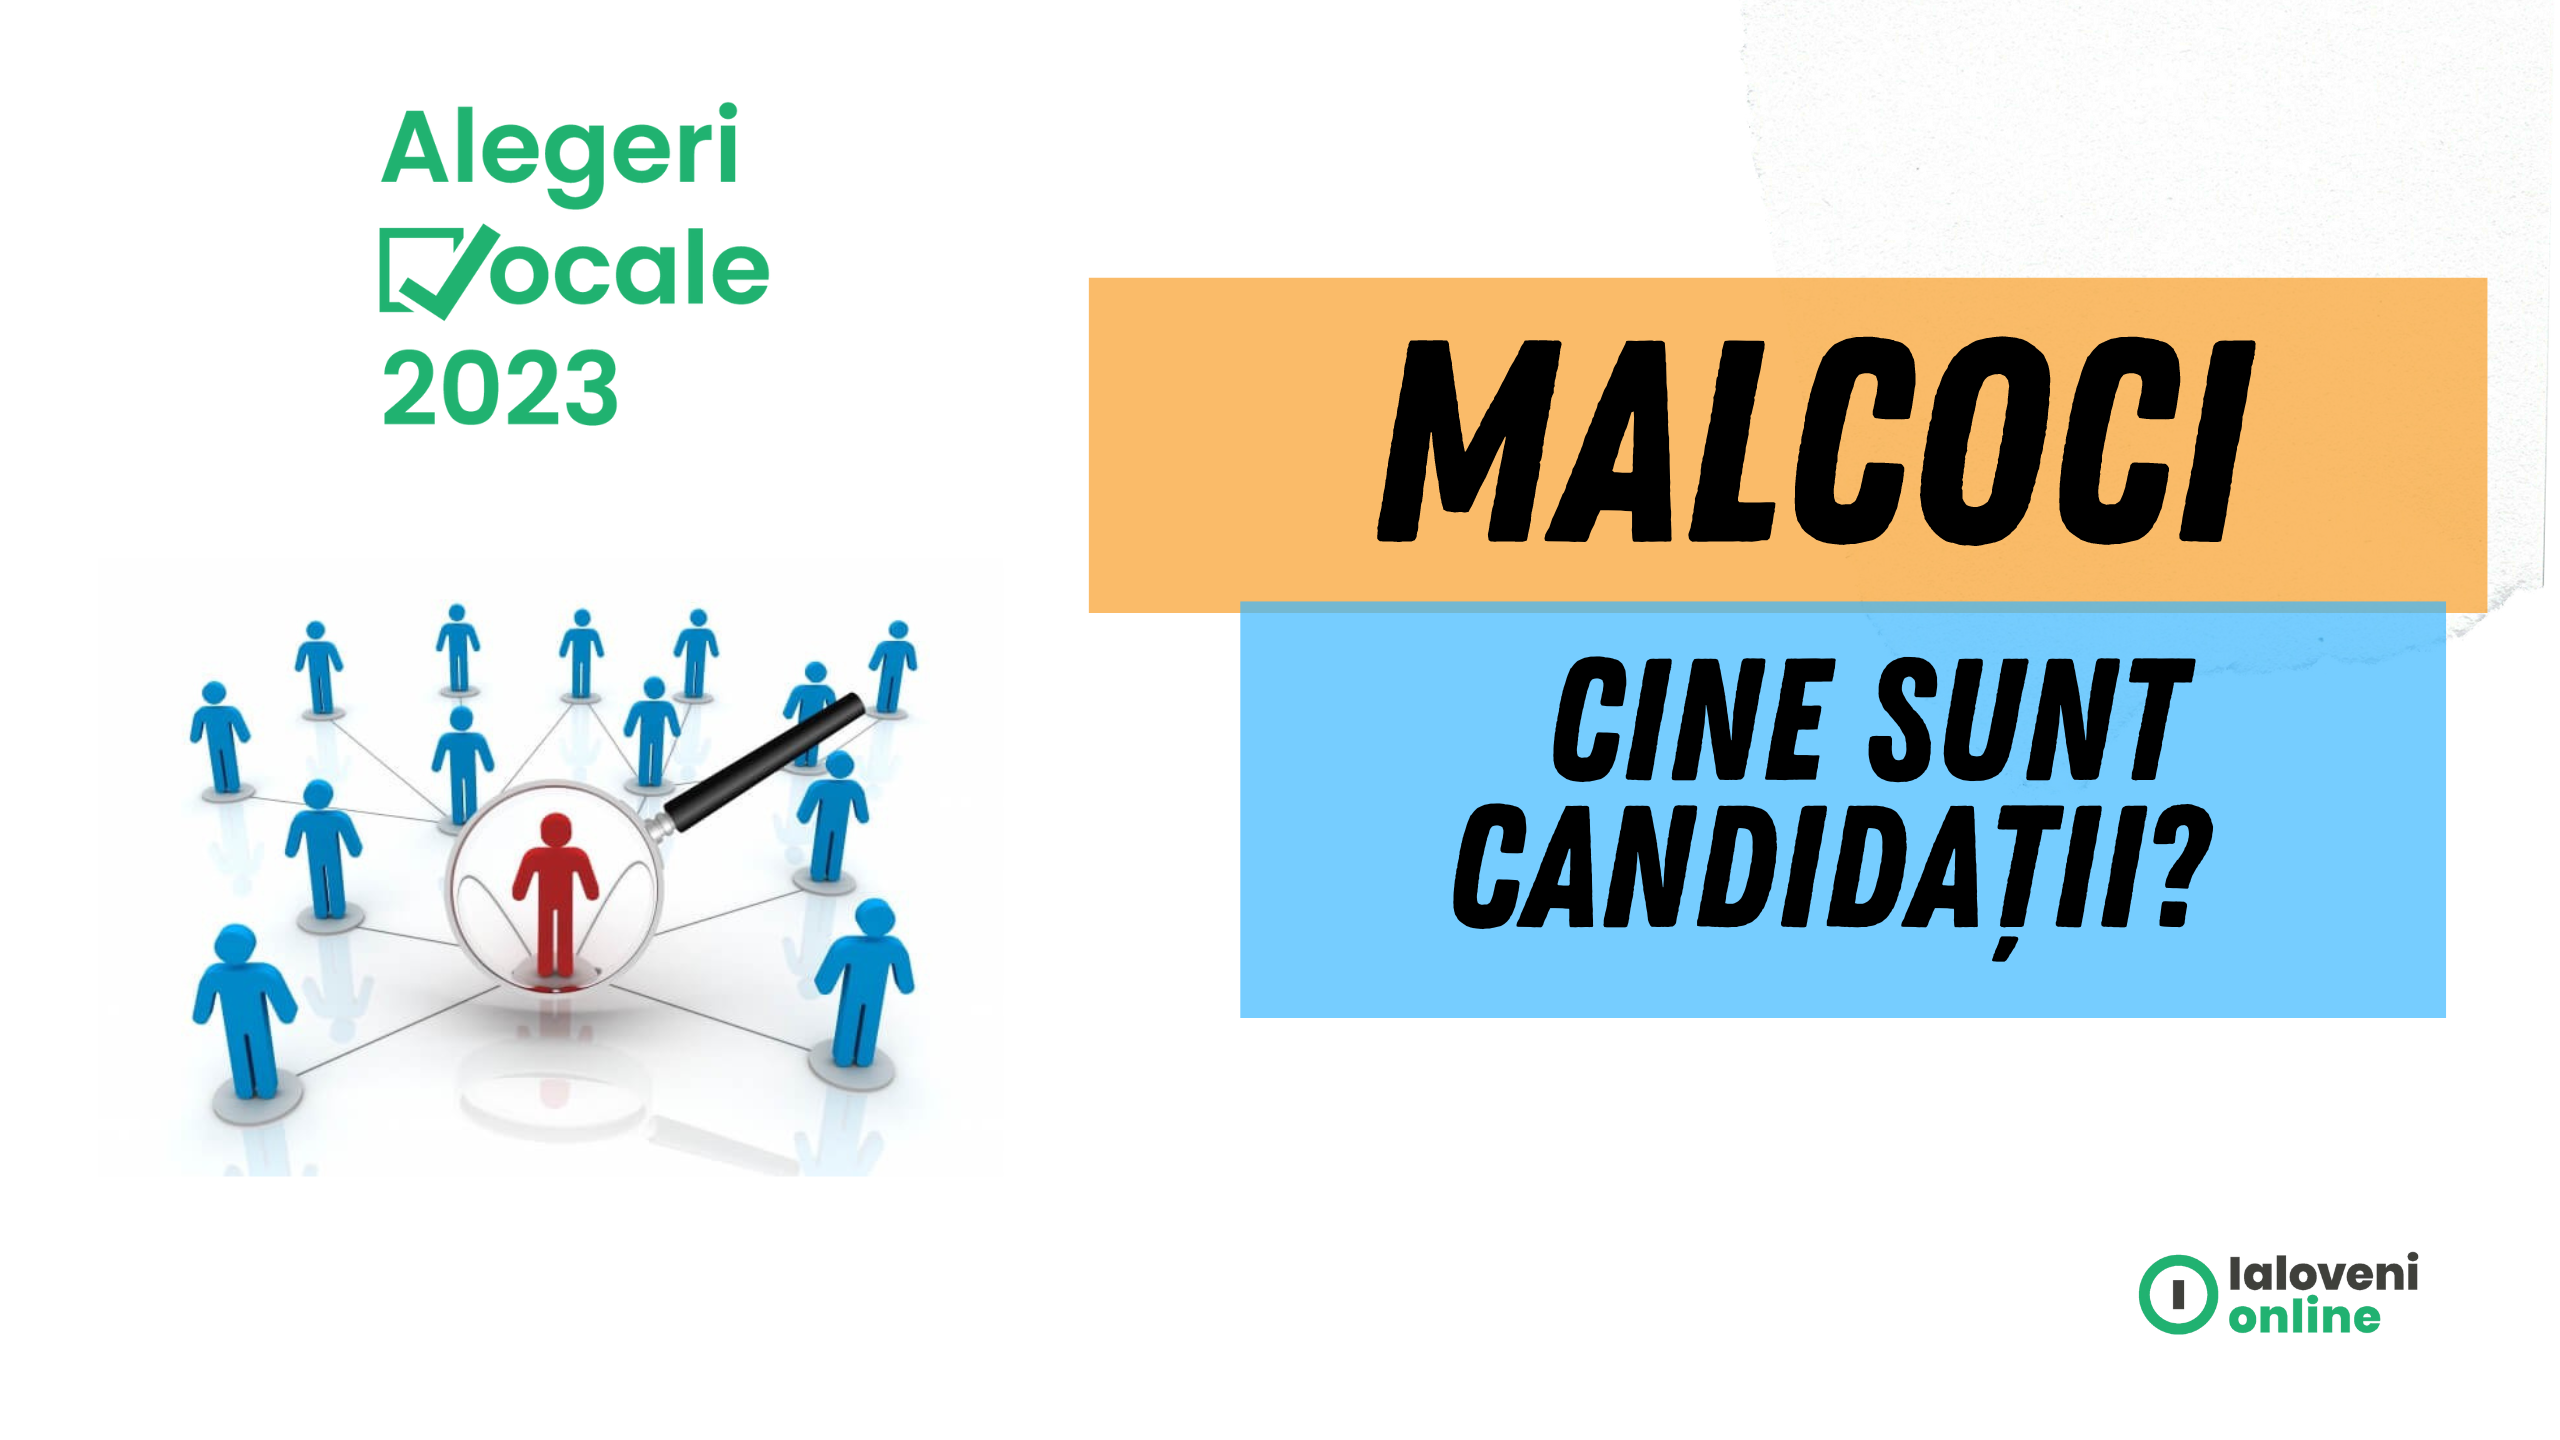 alegeri locale Malcoci 2023